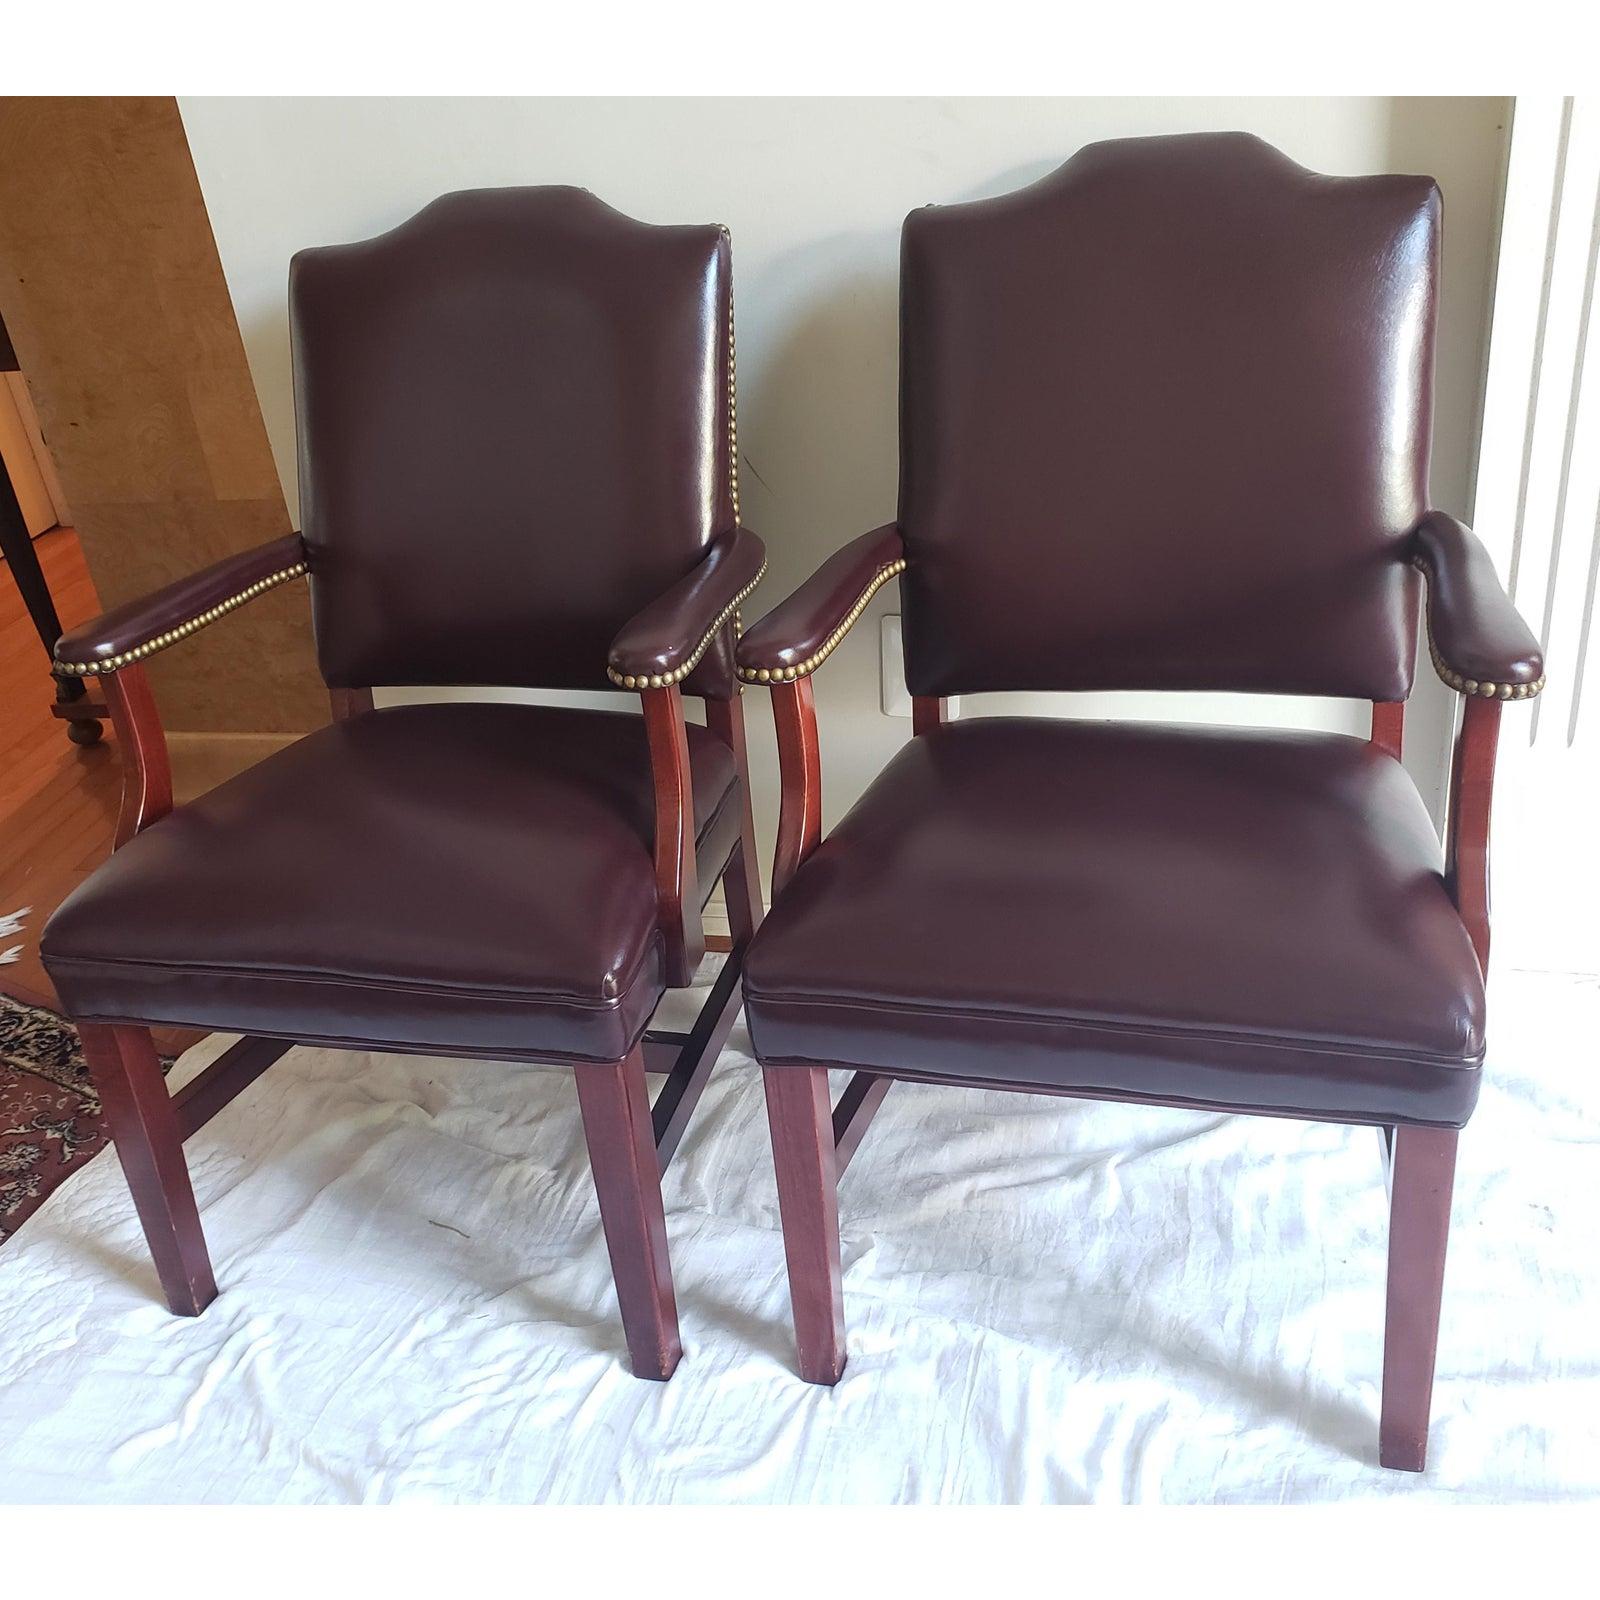 Hickory Leather Co. Fauteuils de bureau pour invités assortis à des fauteuils en cuir de qualité supérieure. Fabriqué par Hickory Leather. Coupe des ongles
Dimensions : 24 